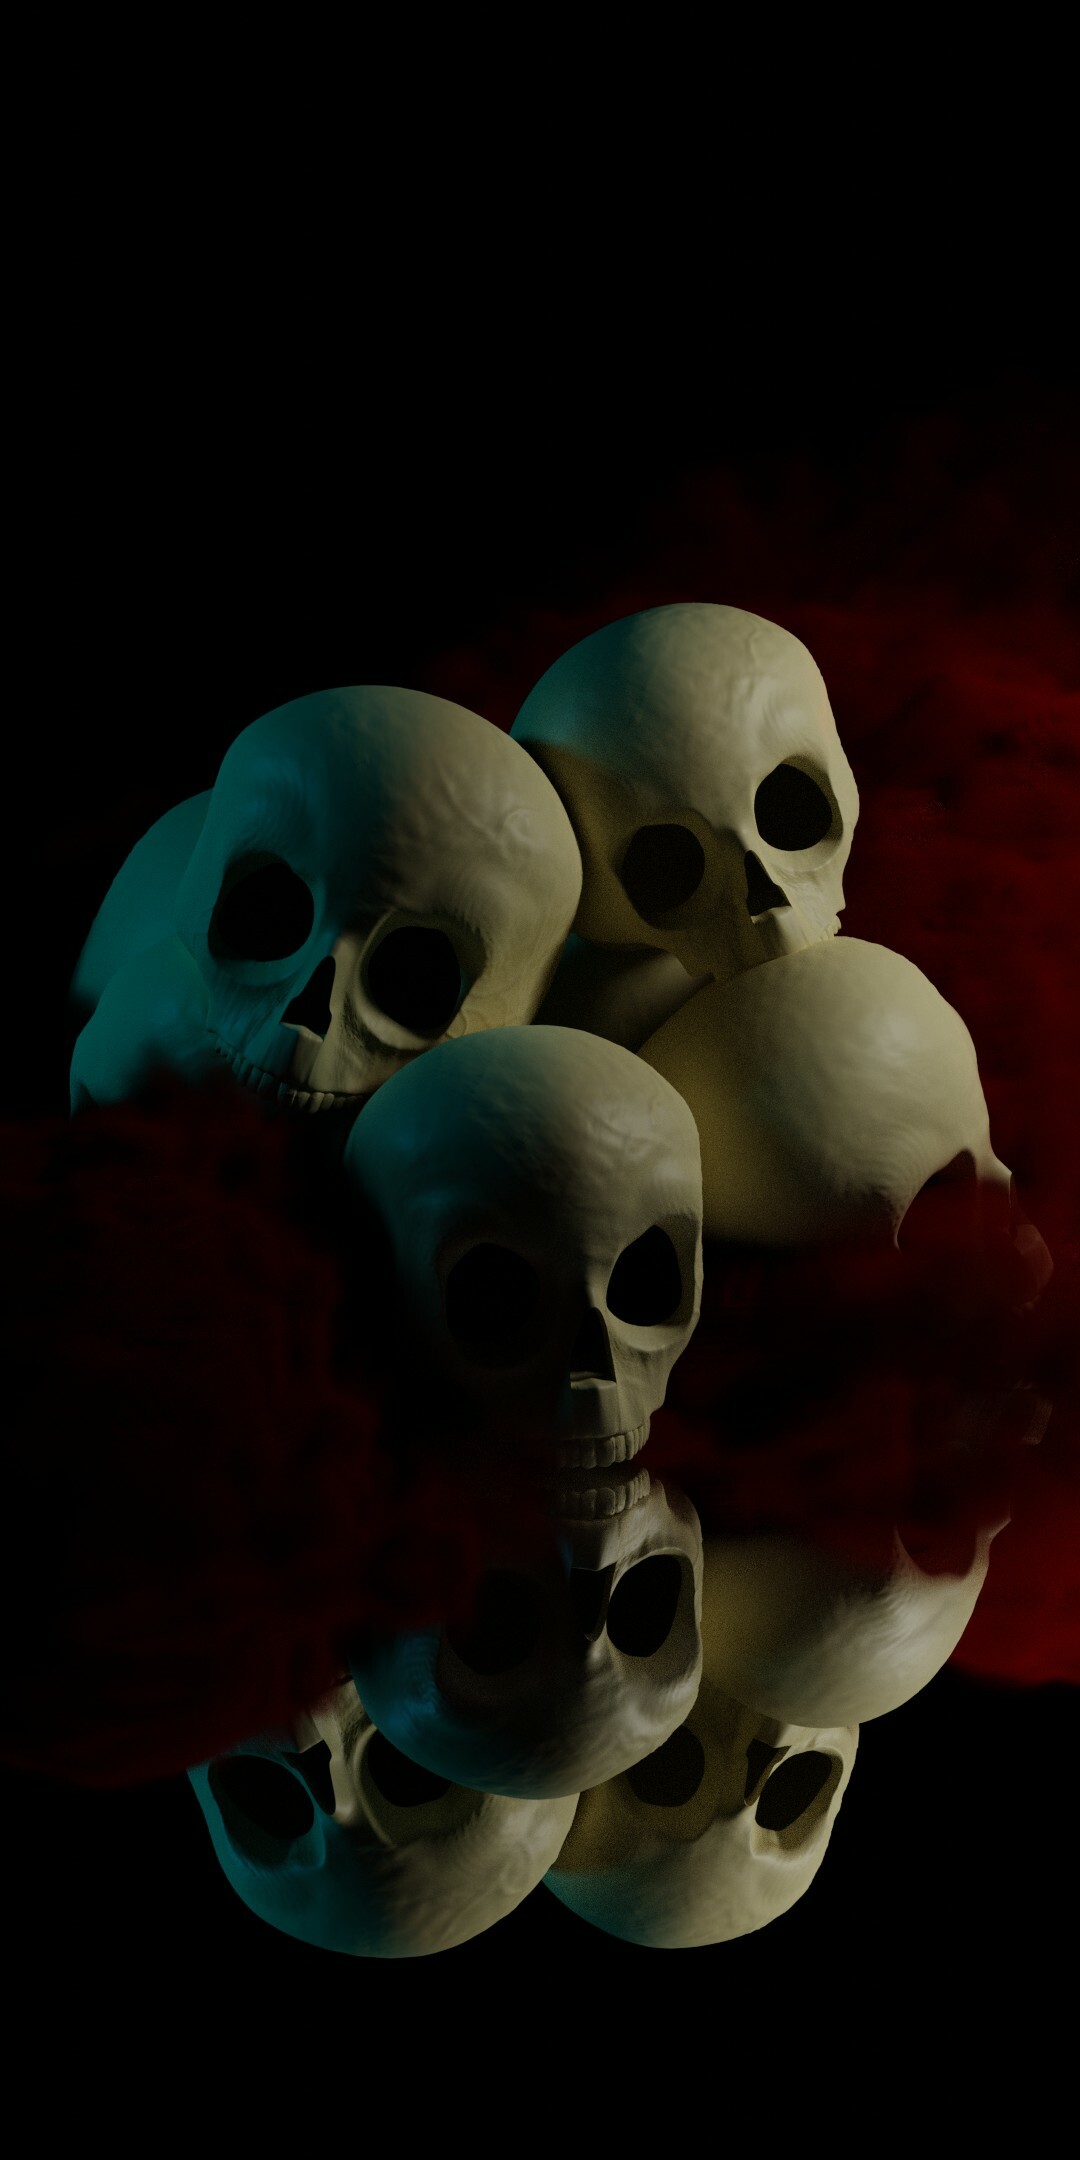 ArtStation - Skull Wallpaper for Mobile - 3D Illustration